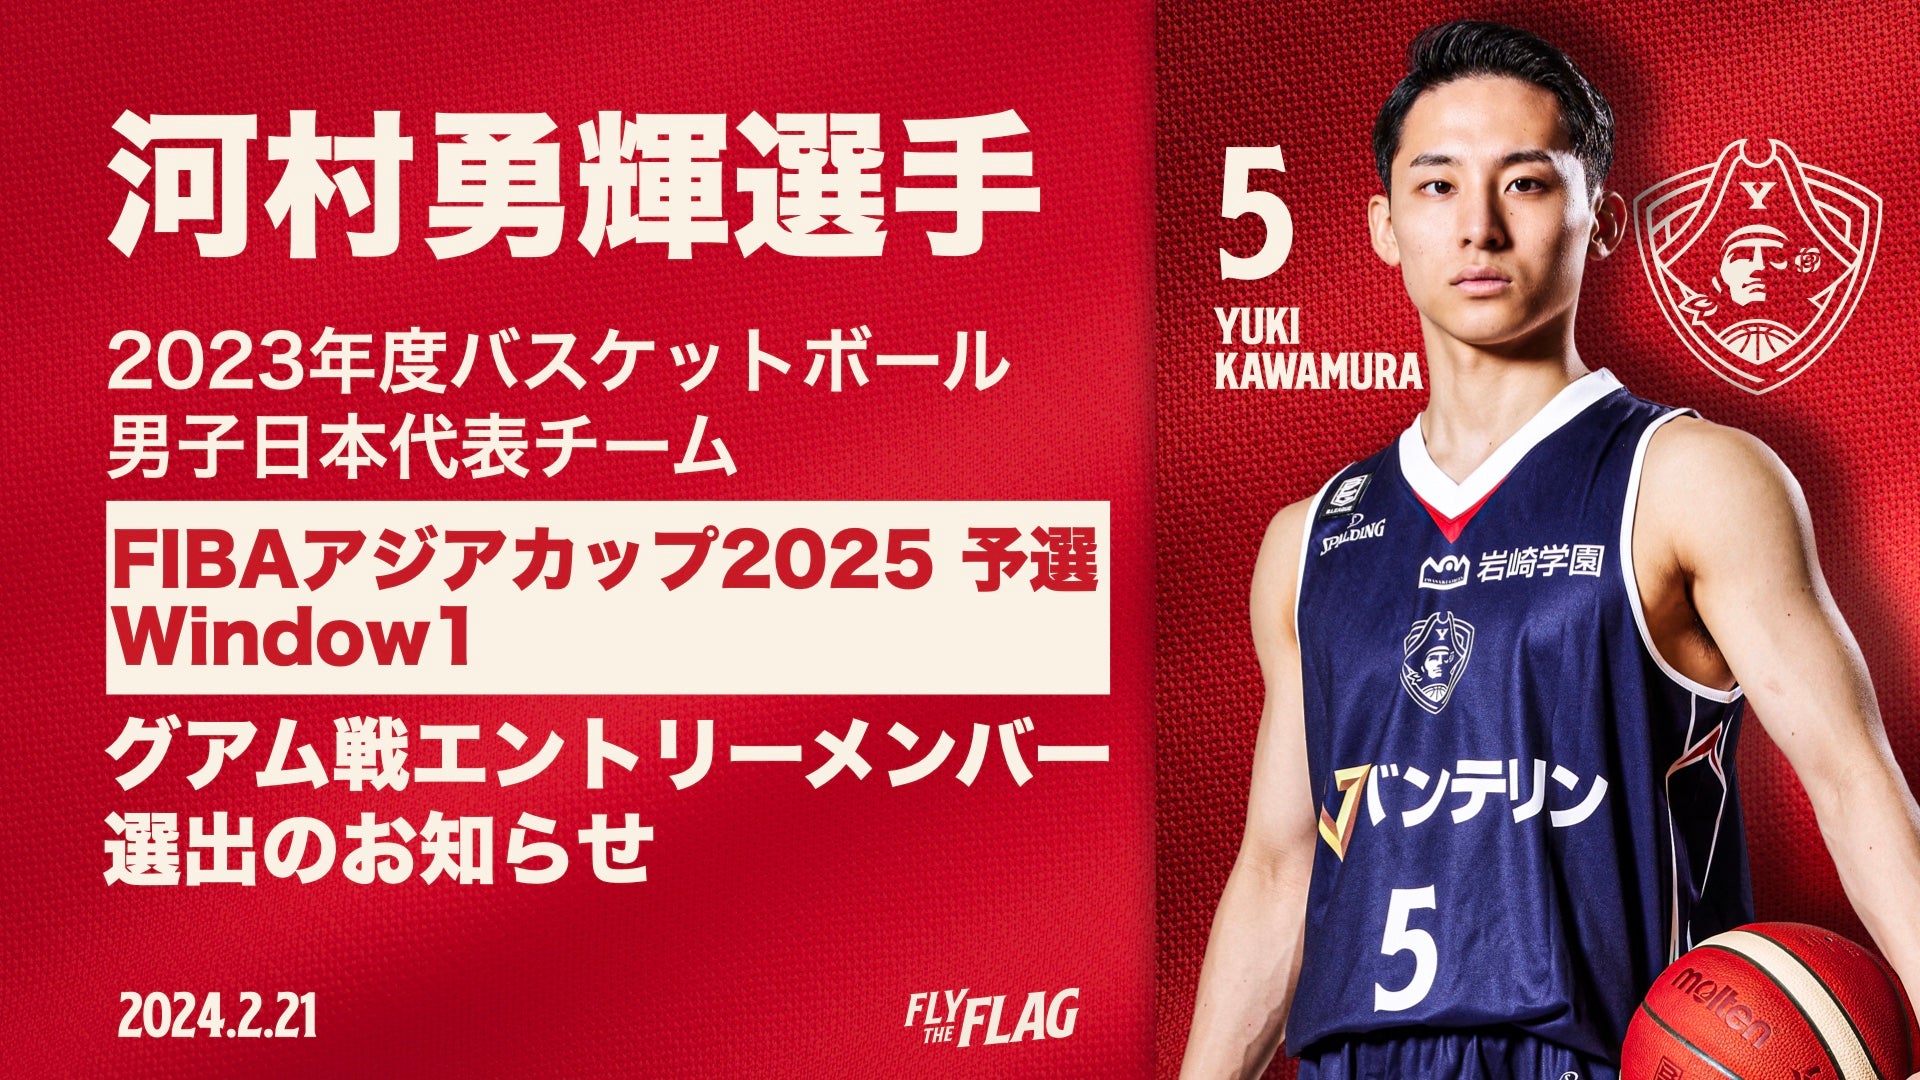 河村勇輝選手「FIBAアジアカップ2025予選」Window1 グアム戦 男子日本 